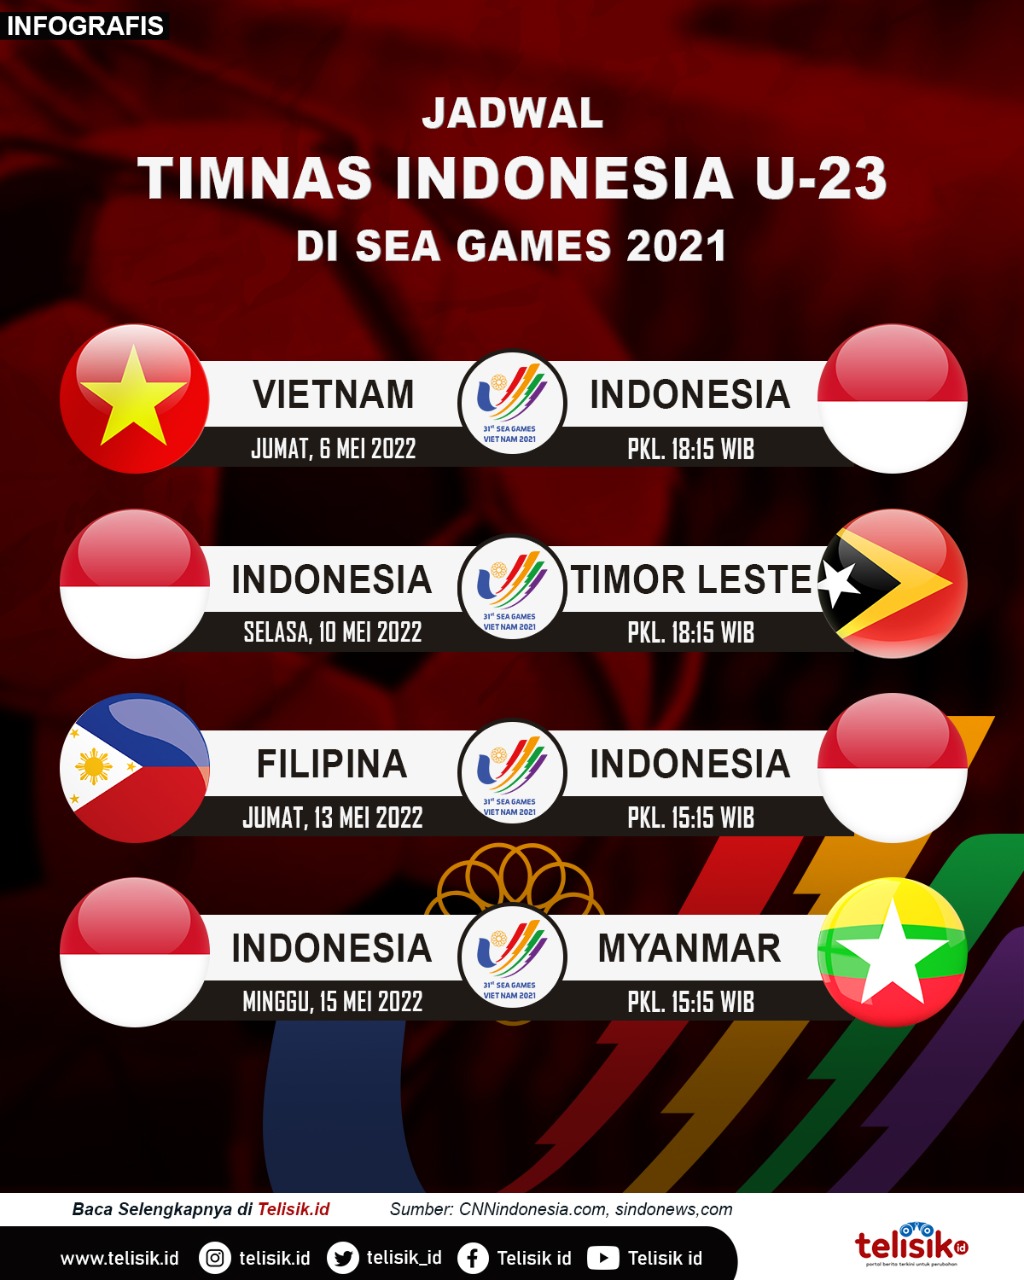 Infografis: Jadwal Timnas Indonesia U-23 di SEA Games 2021